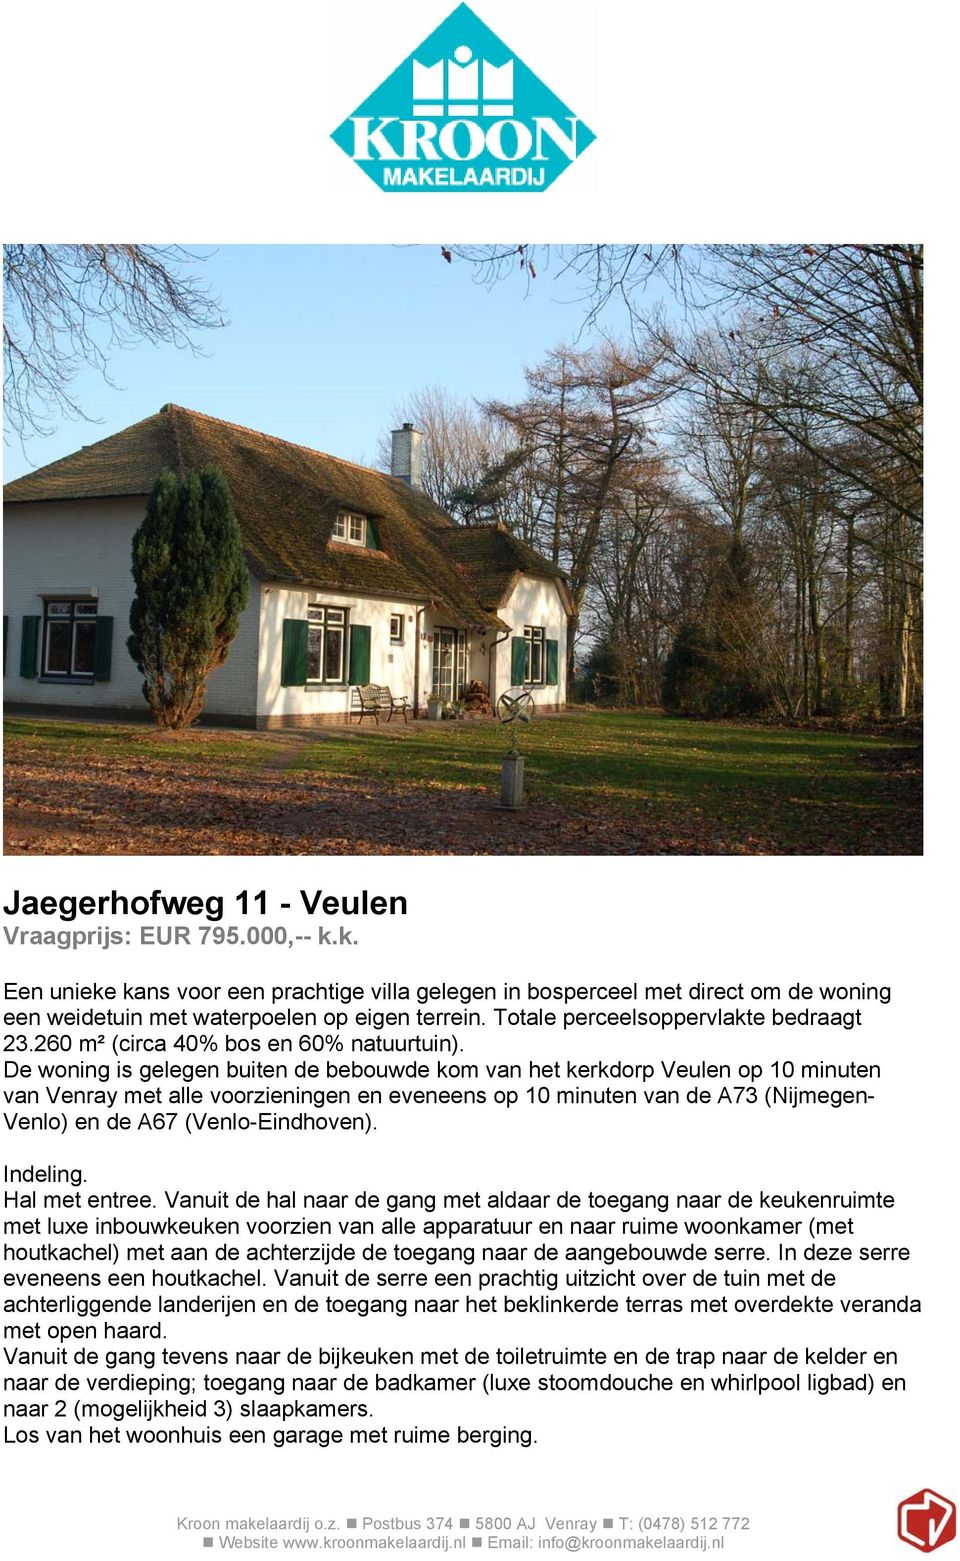 De woning is gelegen buiten de bebouwde kom van het kerkdorp Veulen op 10 minuten van Venray met alle voorzieningen en eveneens op 10 minuten van de A73 (Nijmegen- Venlo) en de A67 (Venlo-Eindhoven).